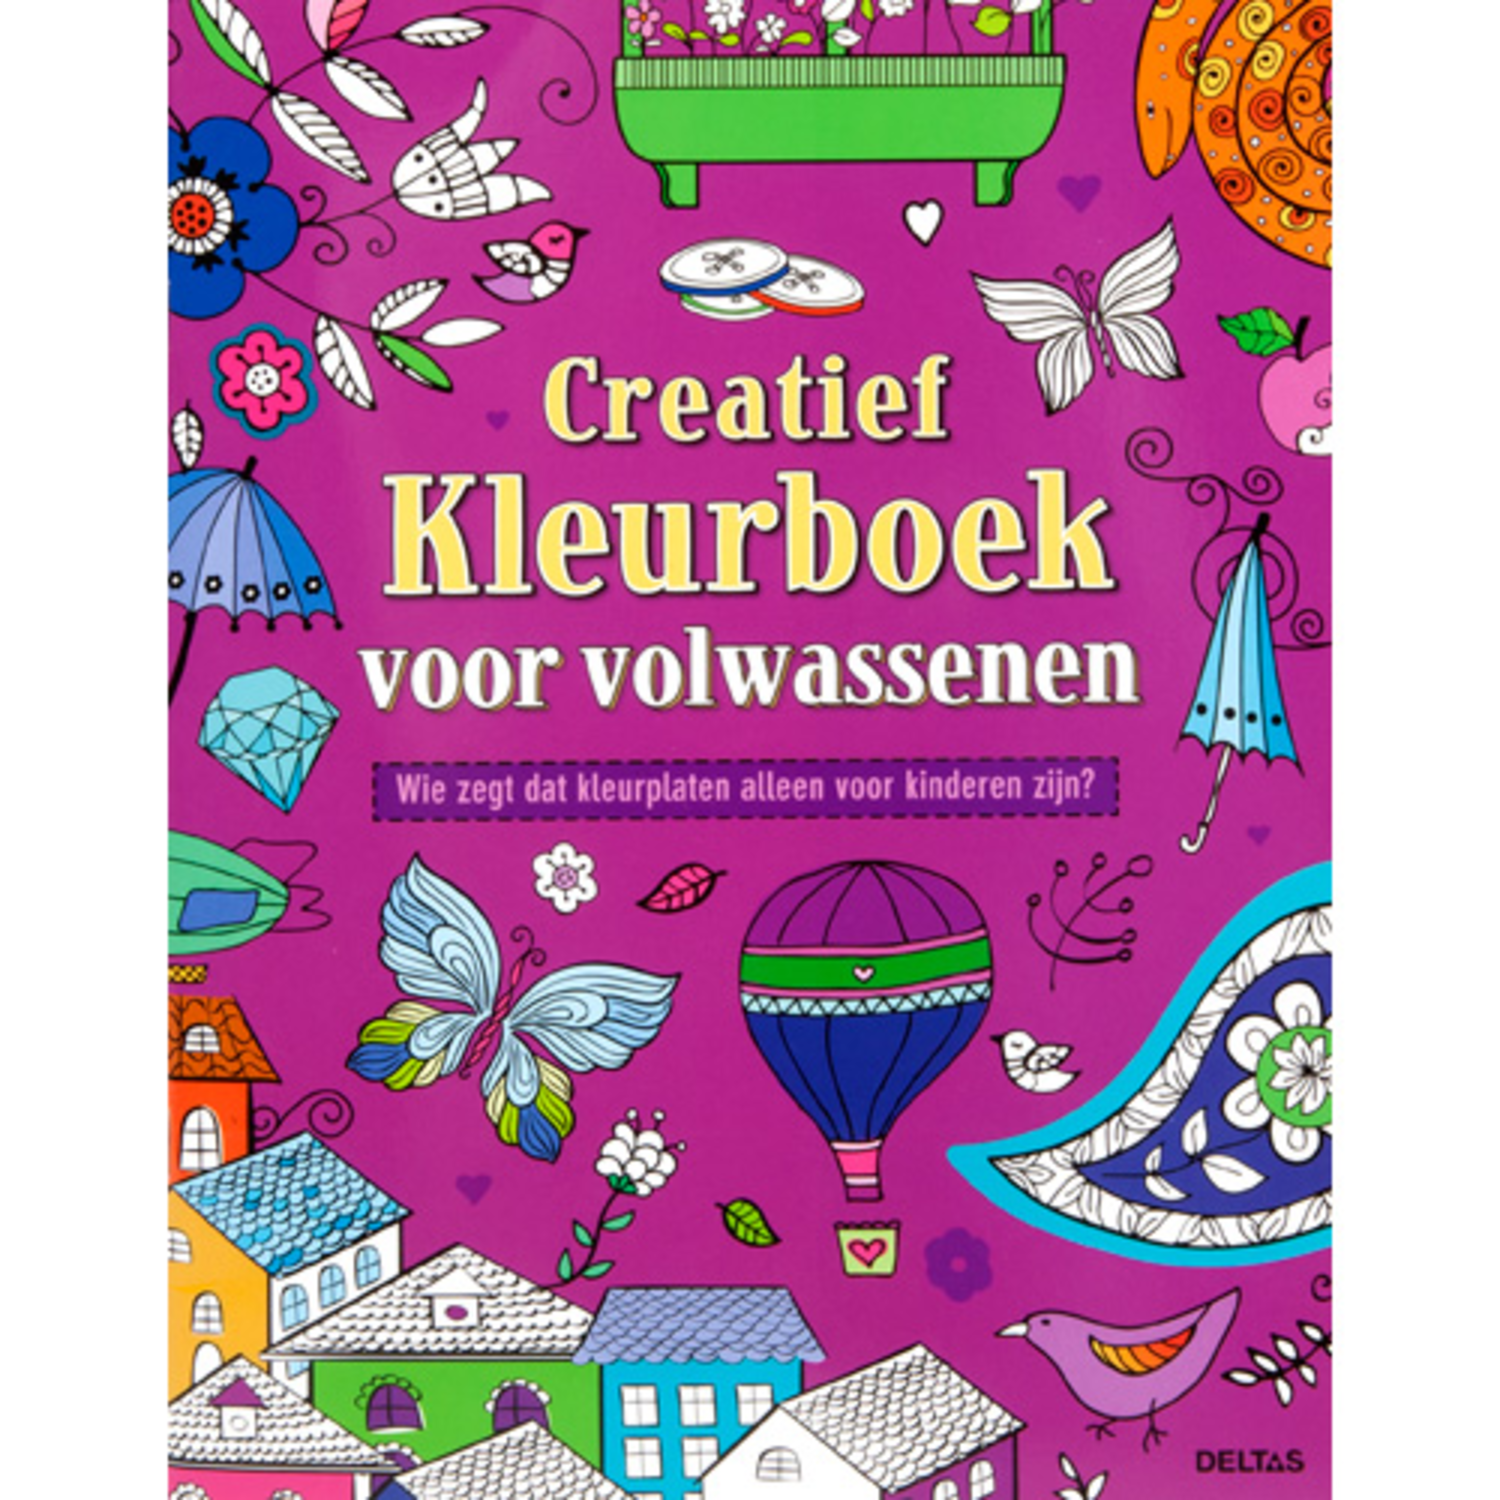 Creatief kleurboek voor volwassenen | - on